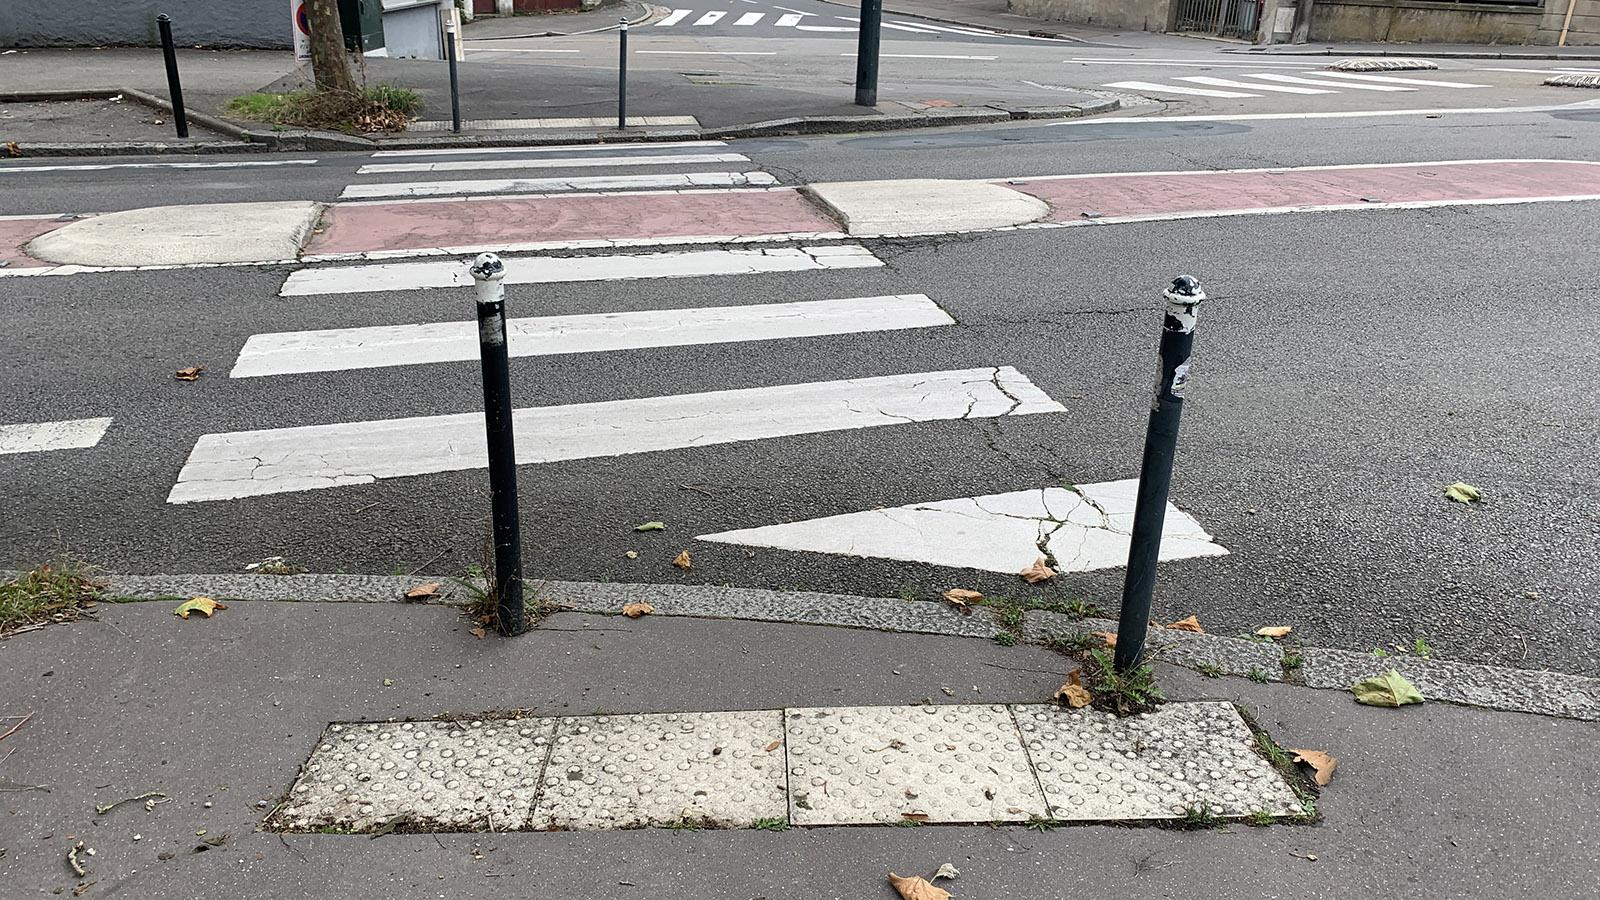 Üblich in Frankreich: abgesenkte Bürgersteig. Häufig sind vor Übergängen auch schon Orientierungsstreifen für Blinde angebracht. Foto: Hilke Maunder